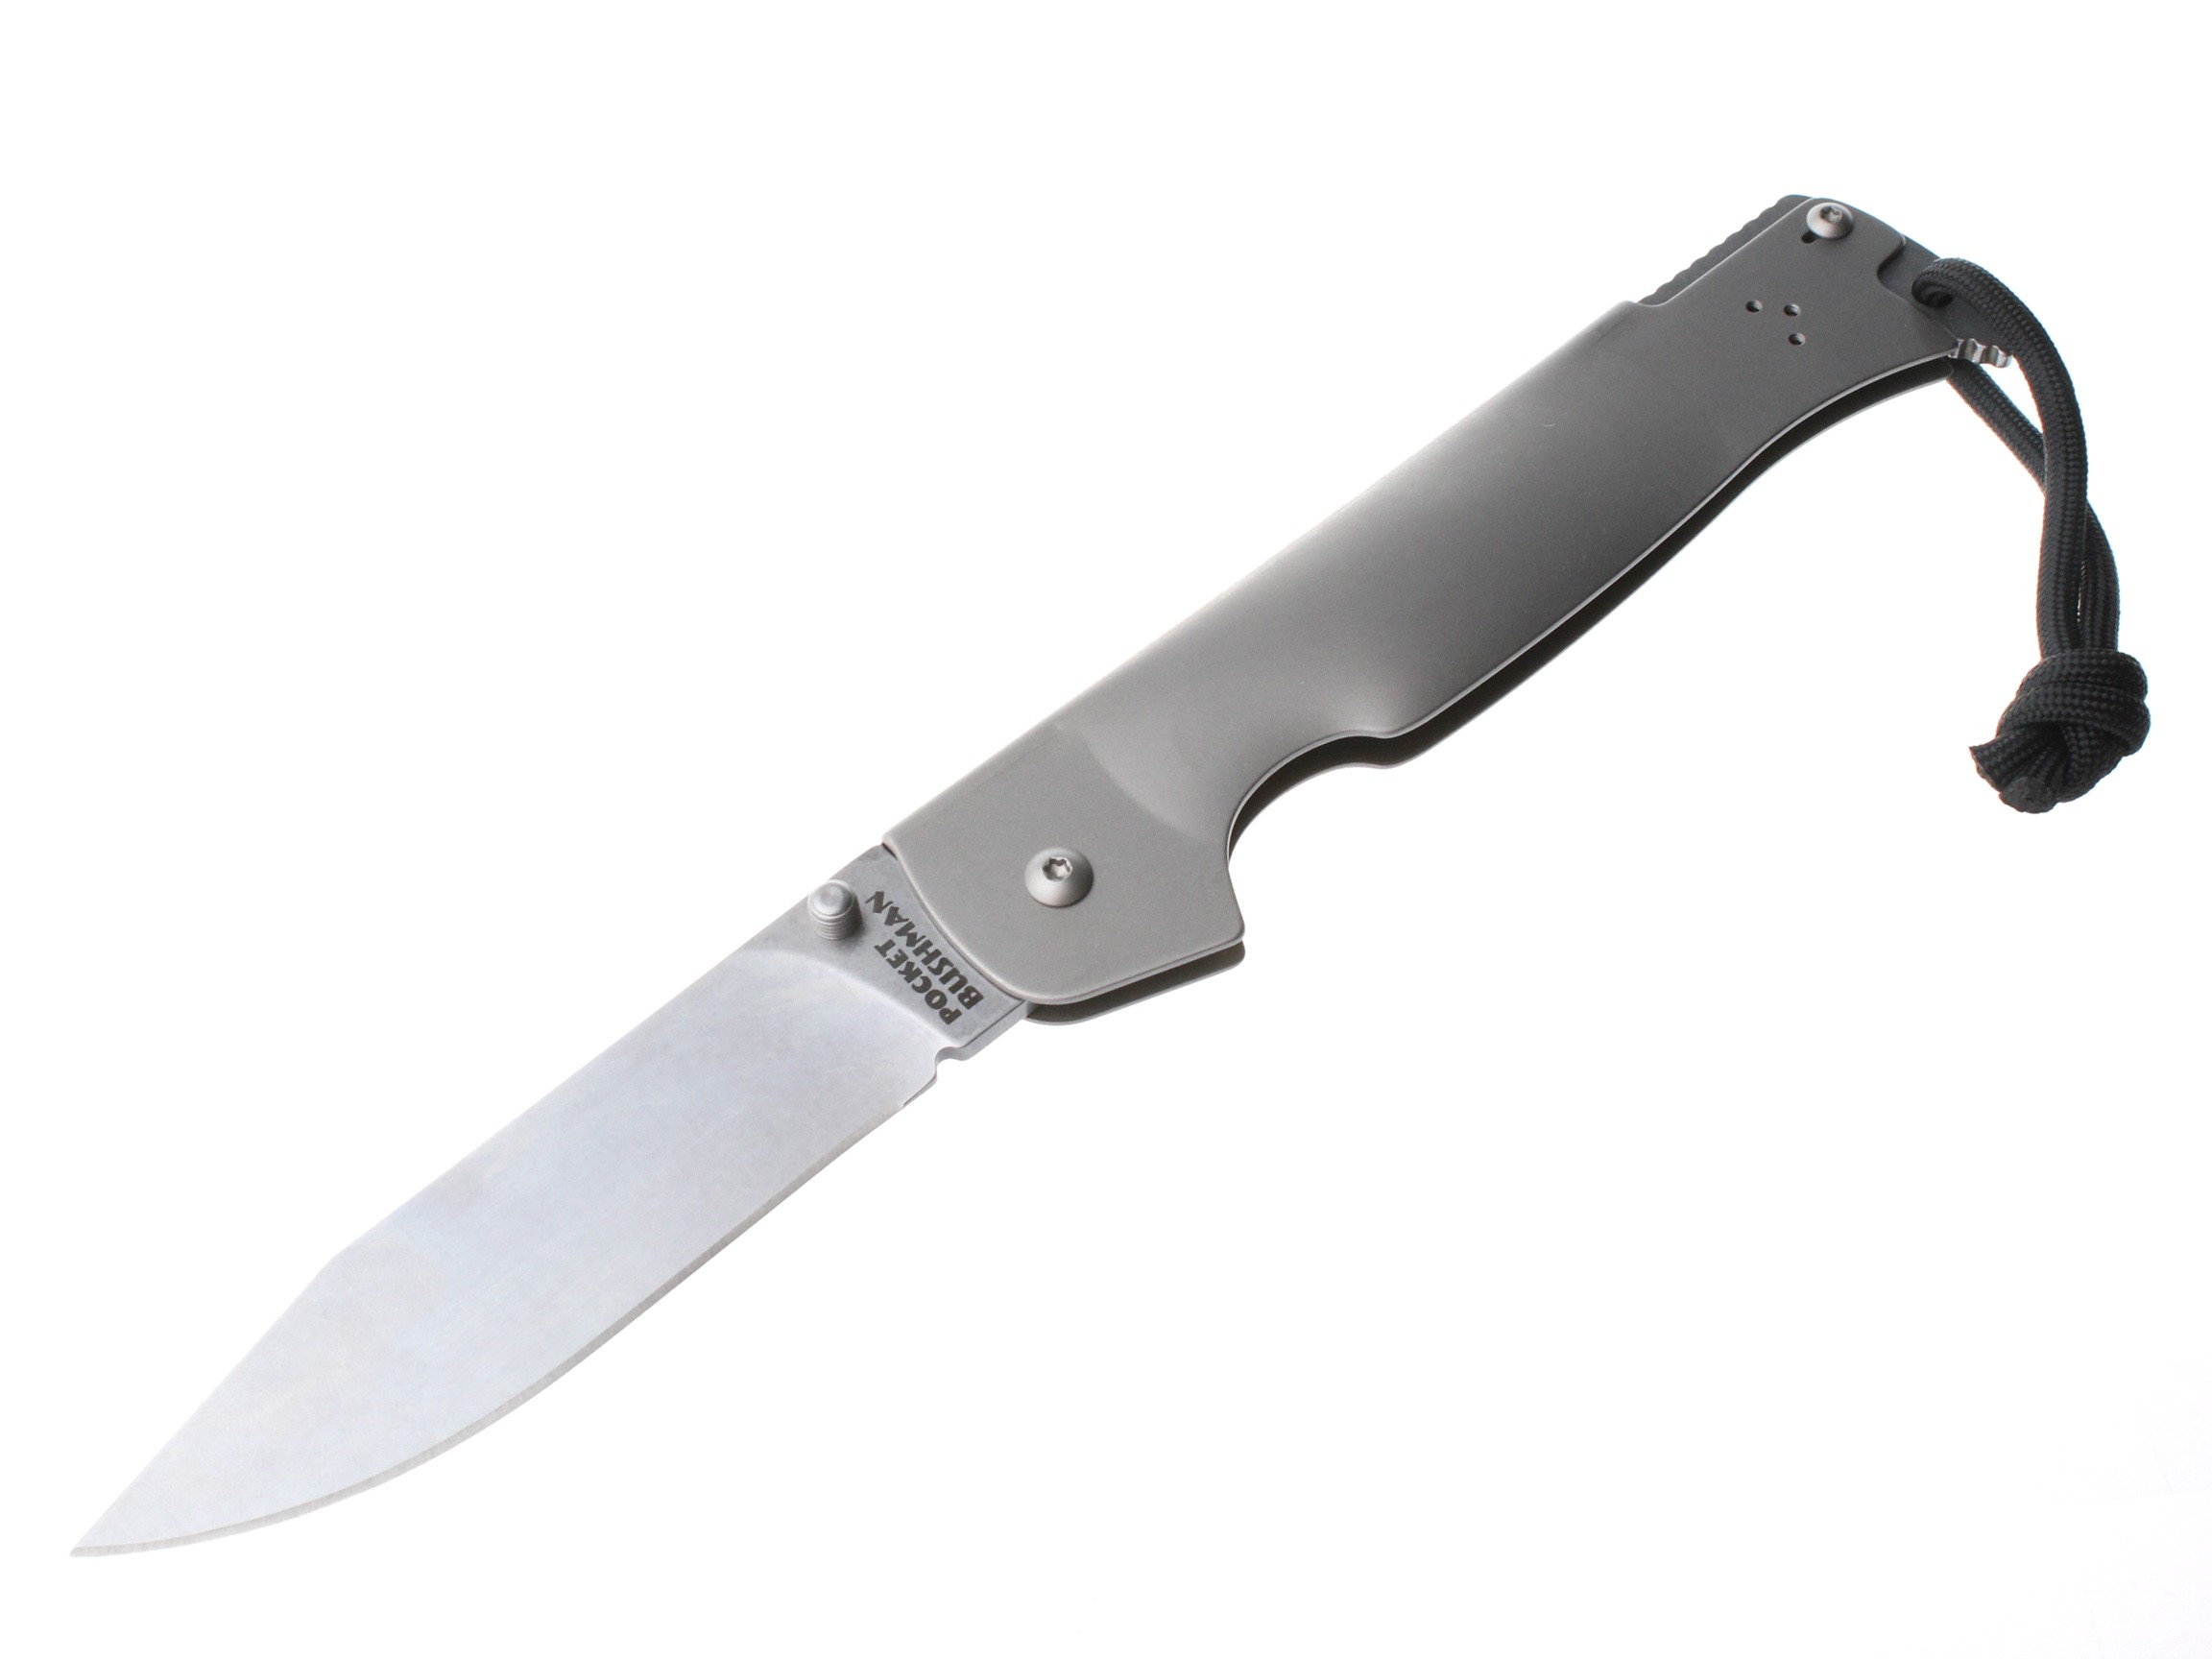 Нож Cold Steel Pocket Bushman складной клинок 11.5 см сталь 4116 - фото 1